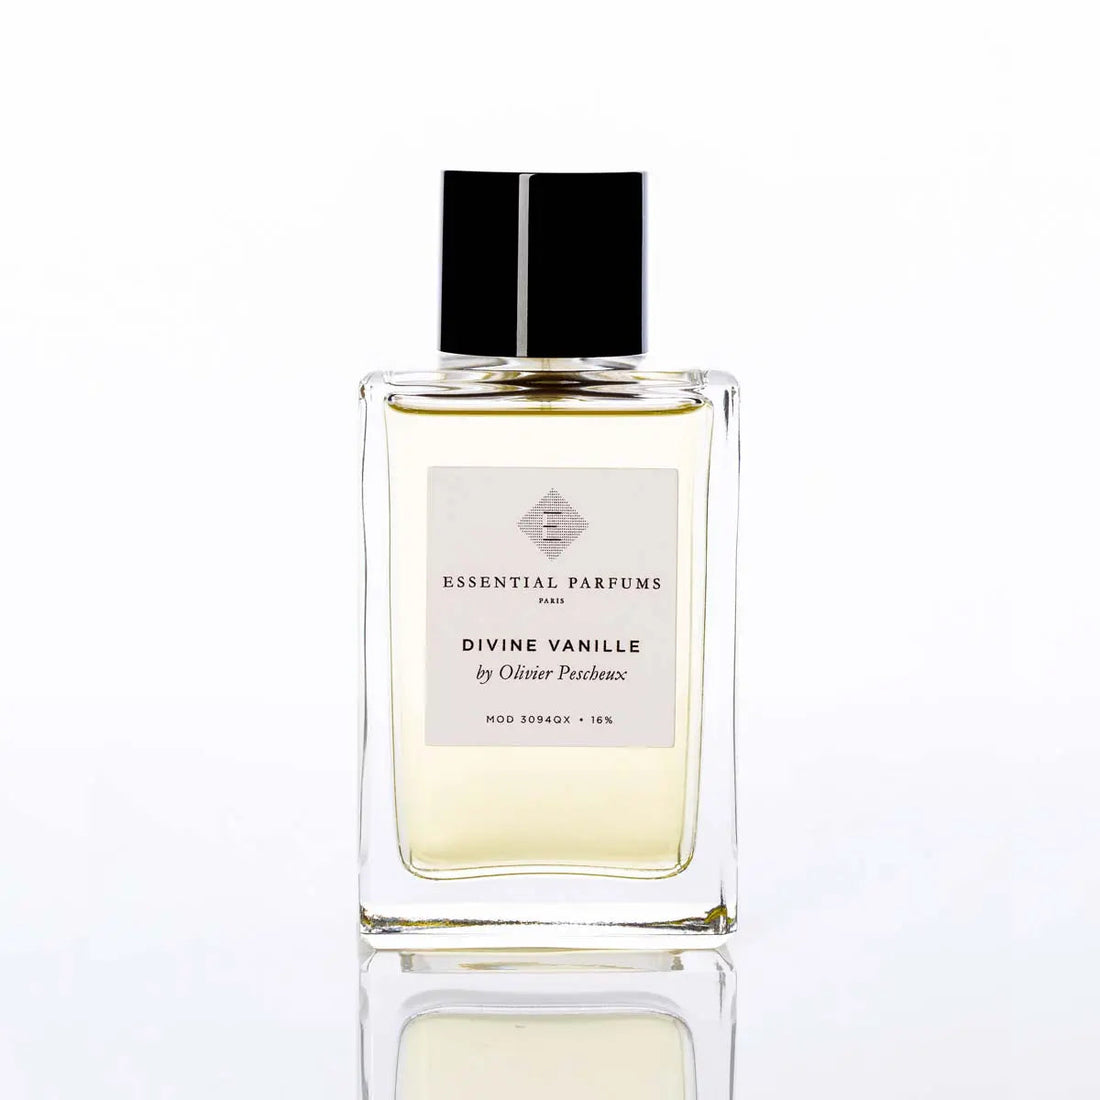 Essential parfums Divine Vanille eau de parfum - 100 ml